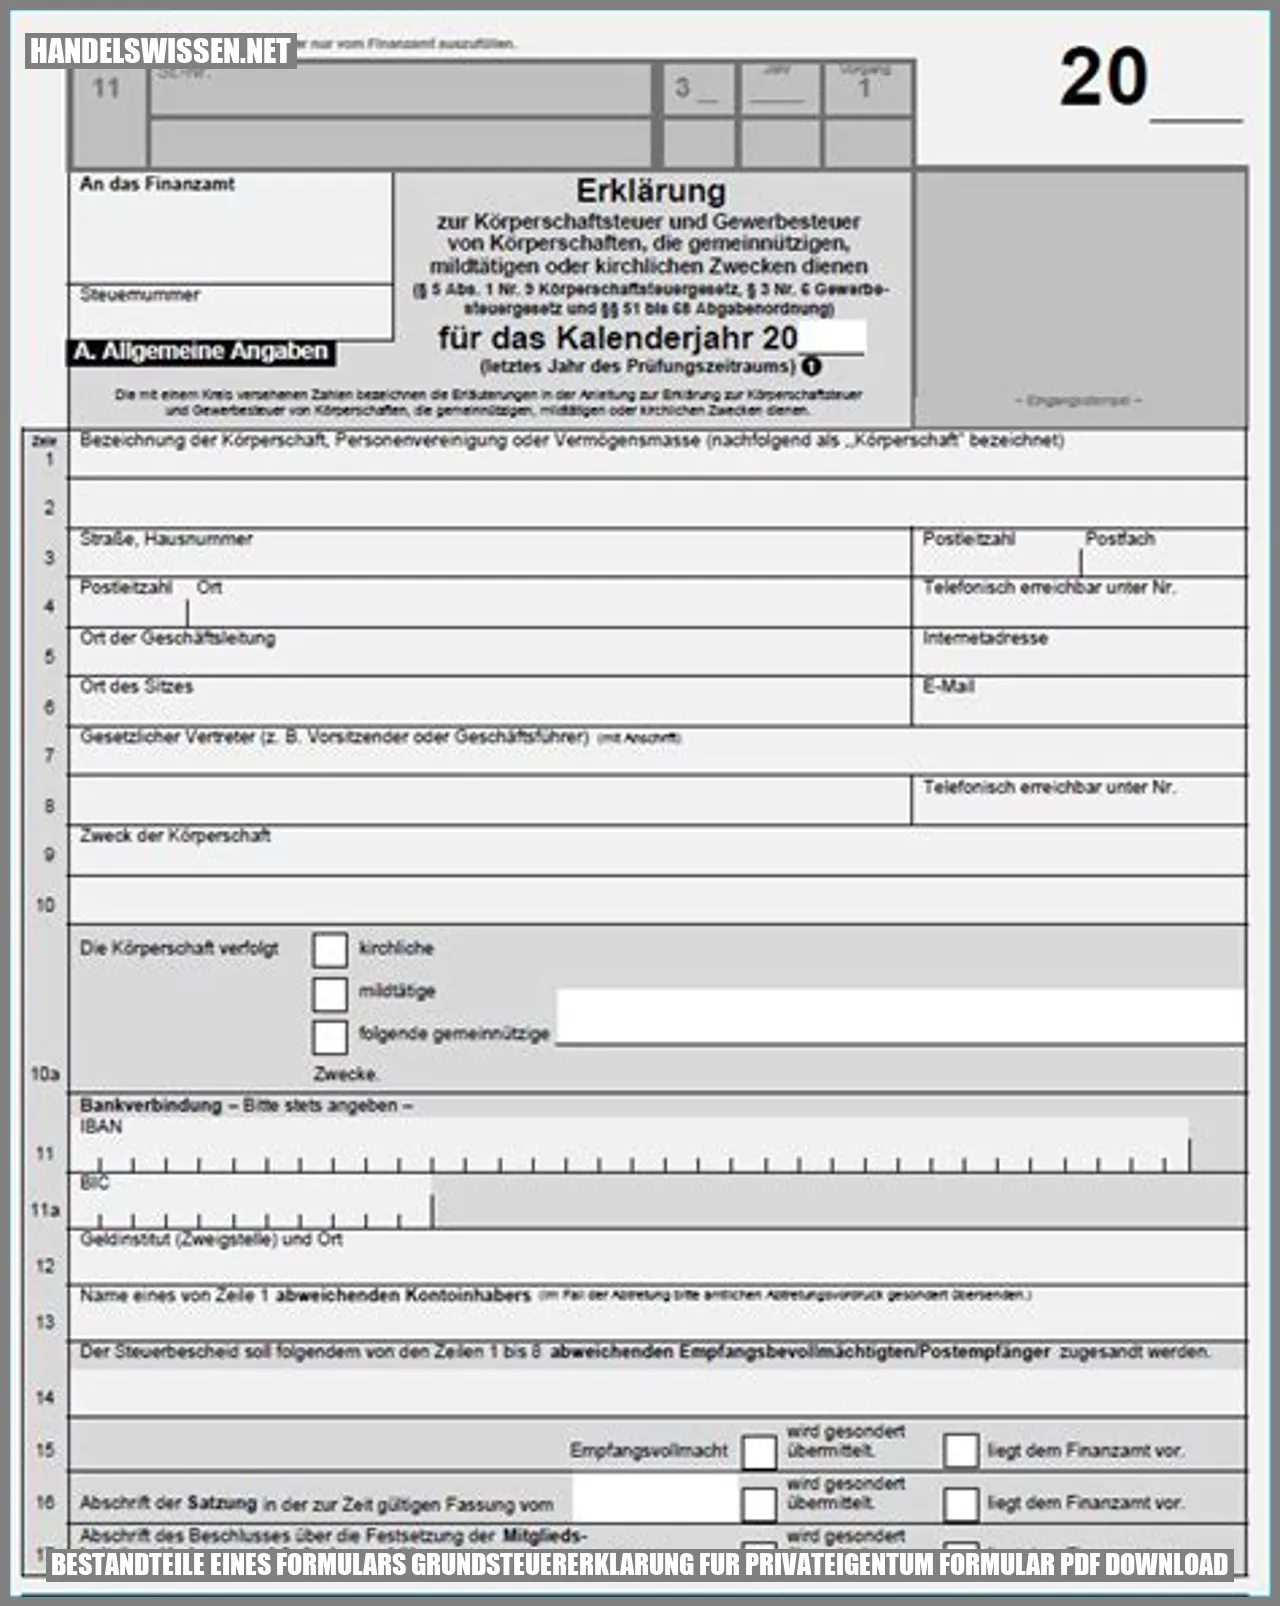 Bestandteile eines Formulars grundsteuererklarung fur privateigentum formular pdf download